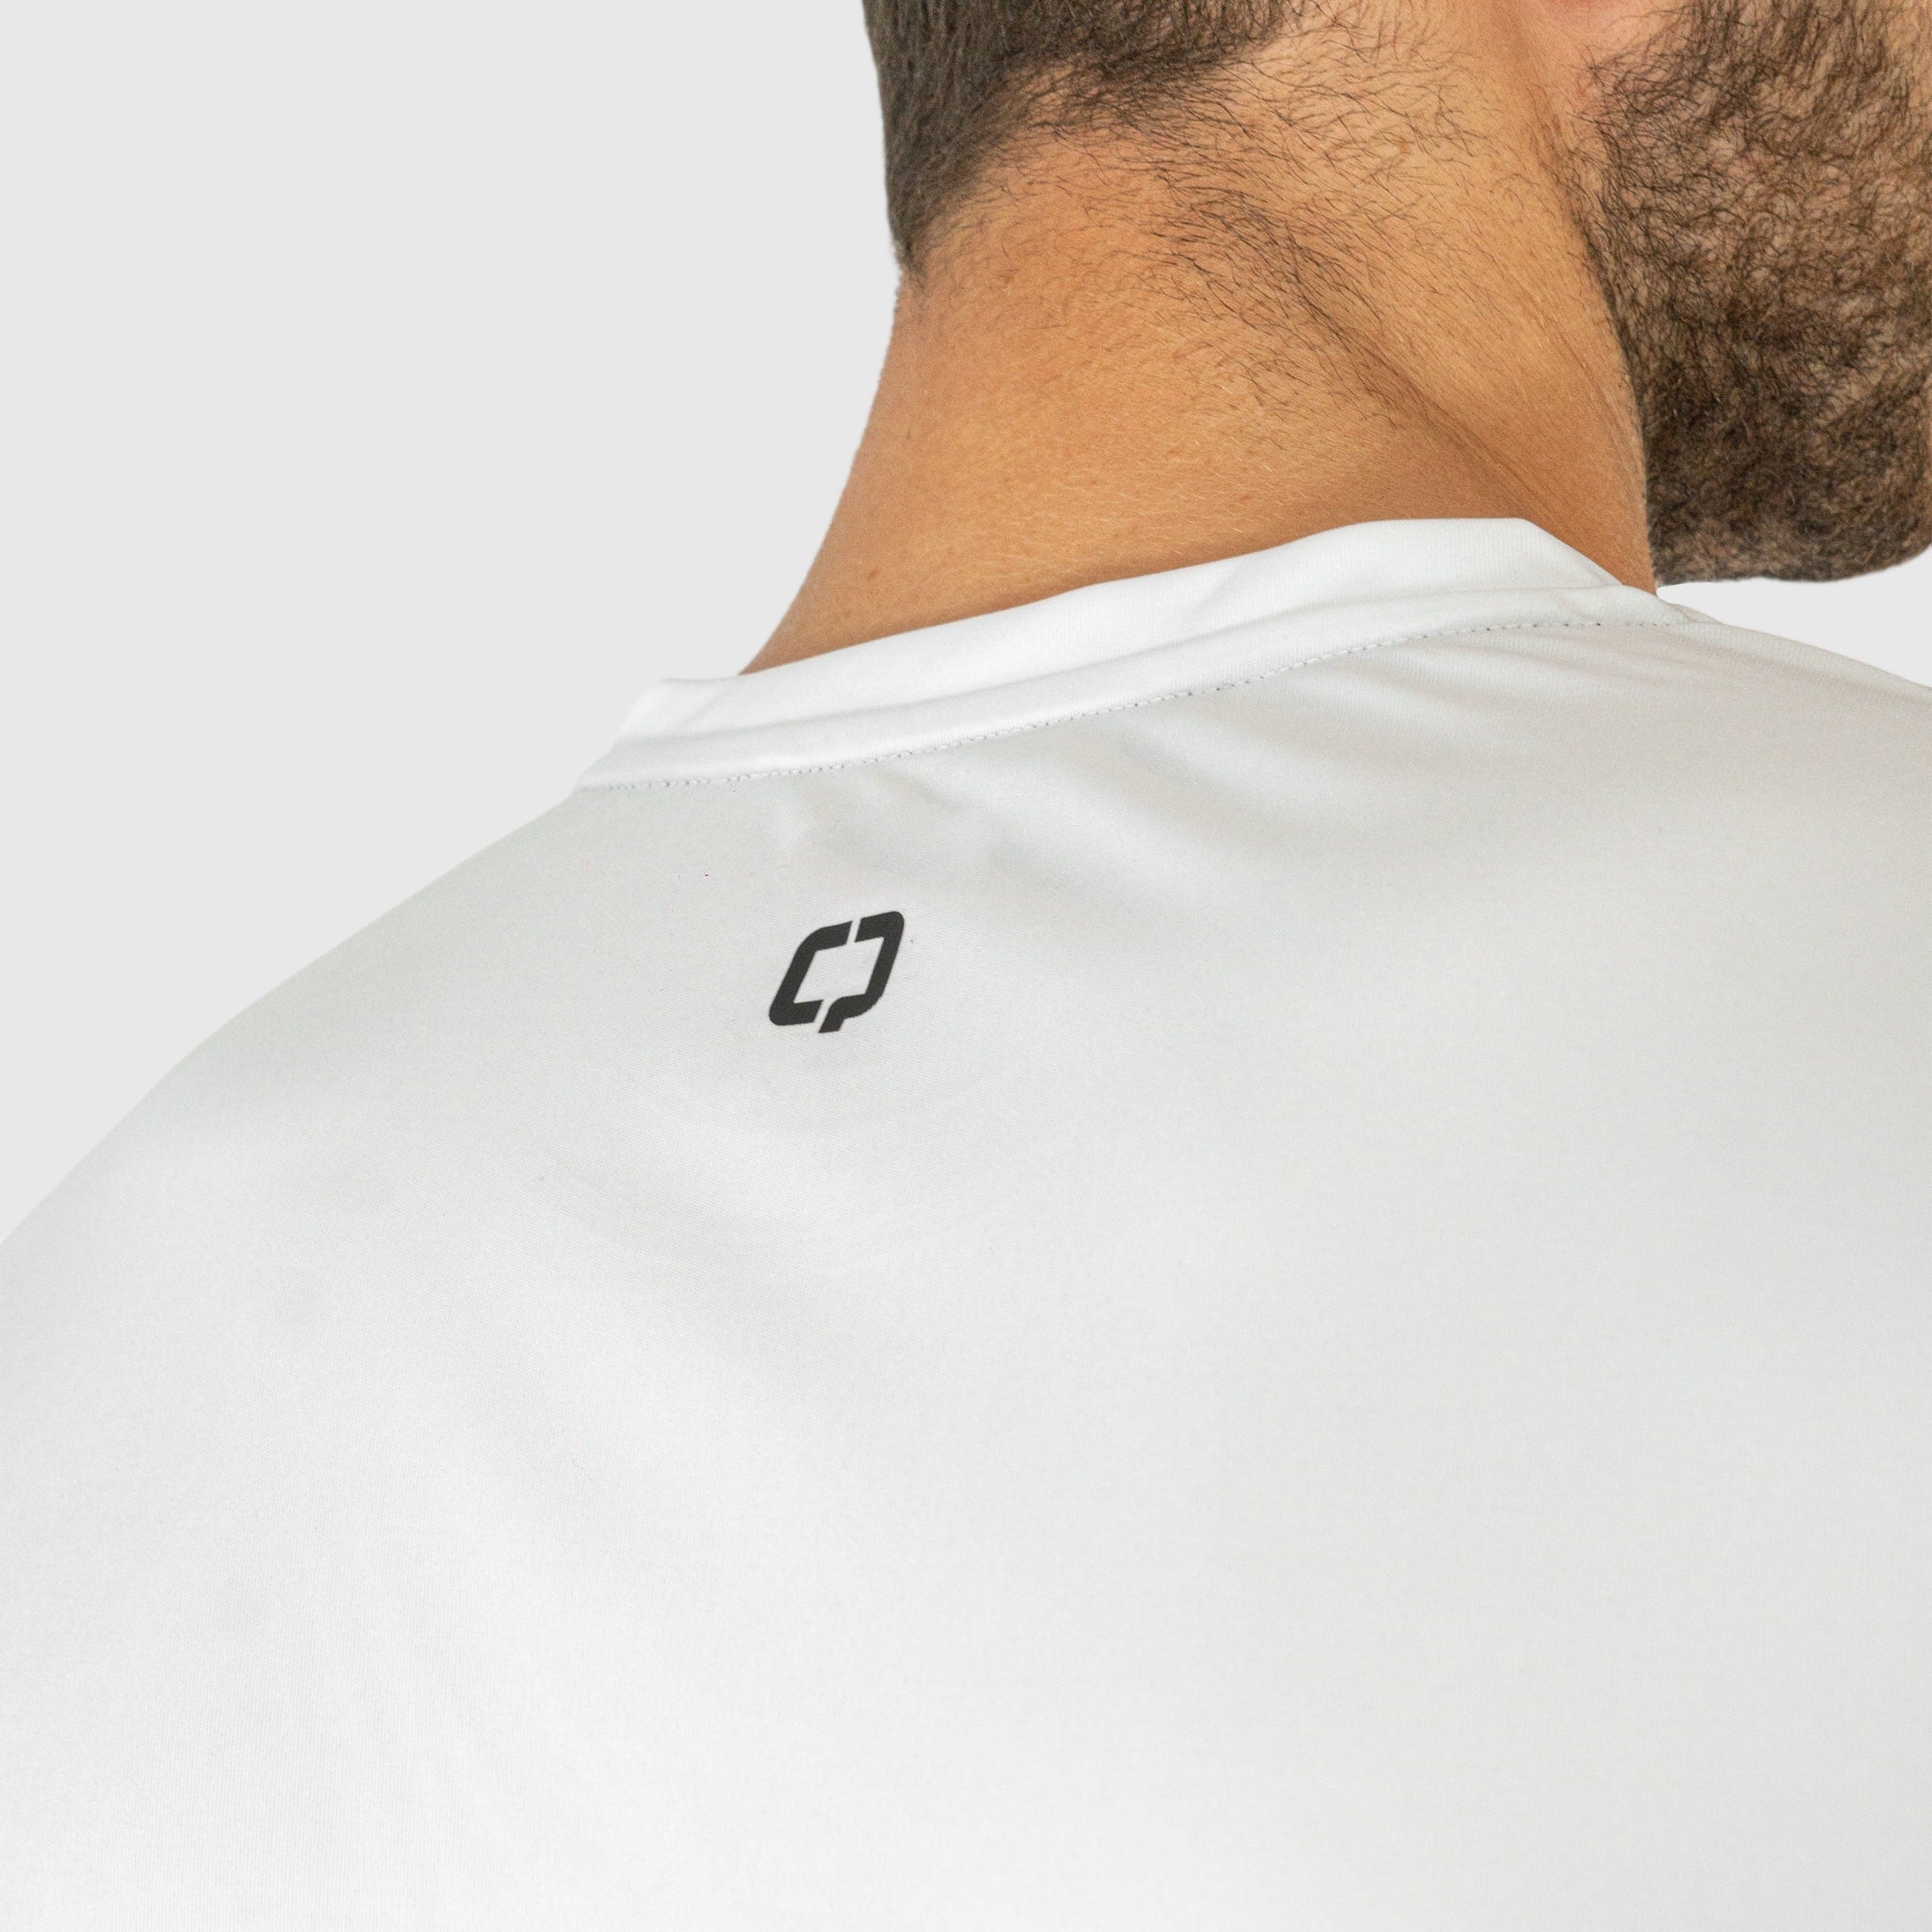 Quad Padel Essential T Shirt white back detail